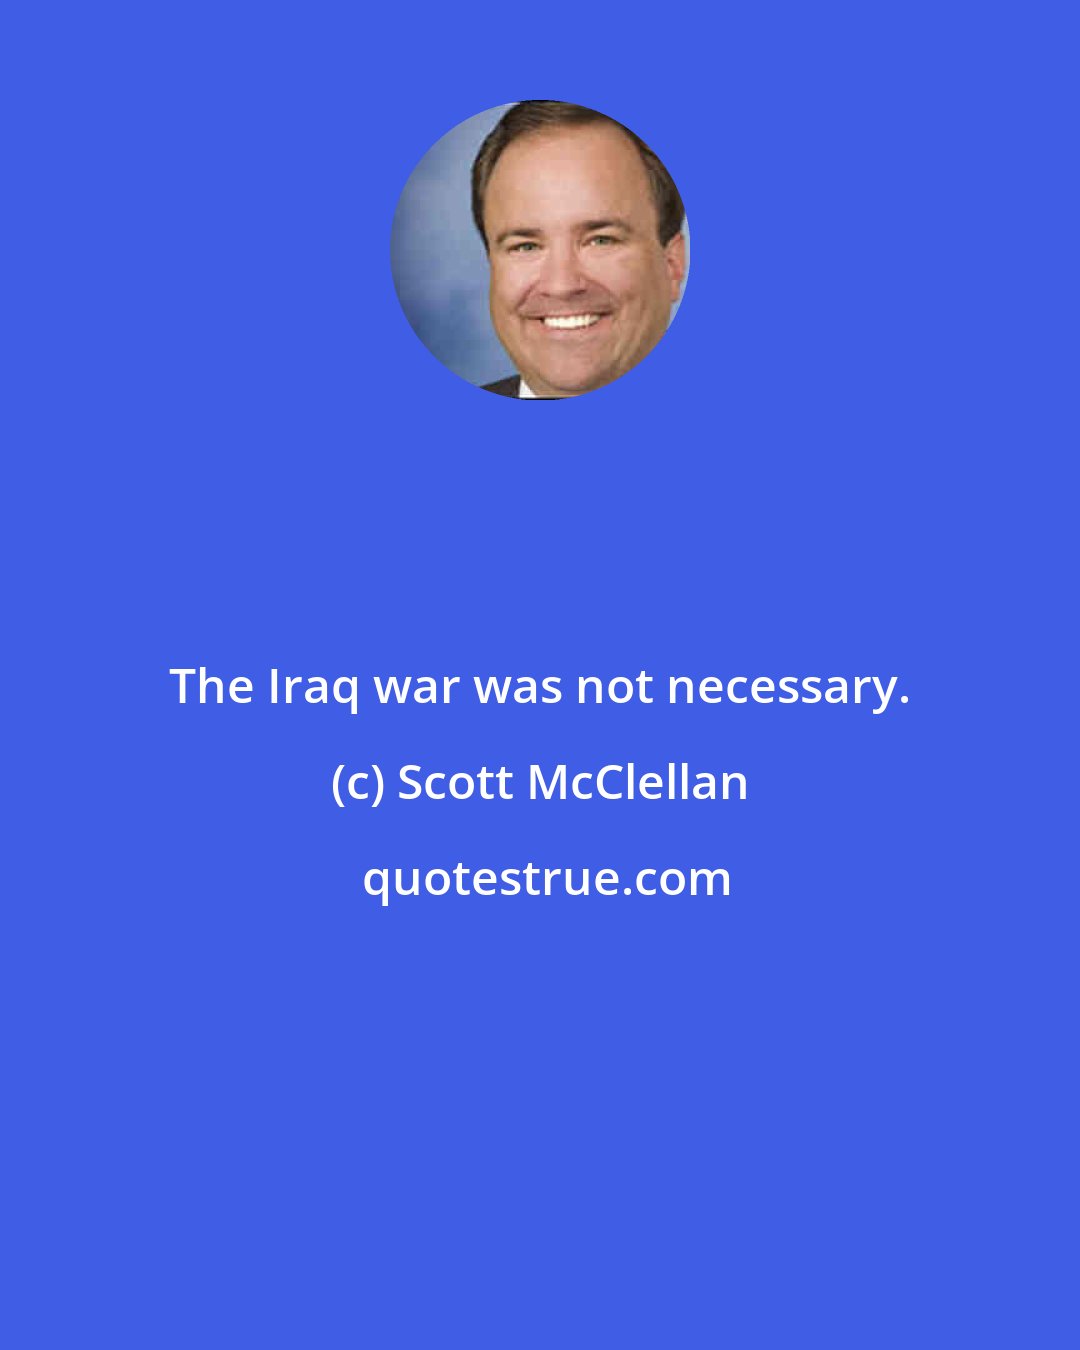 Scott McClellan: The Iraq war was not necessary.